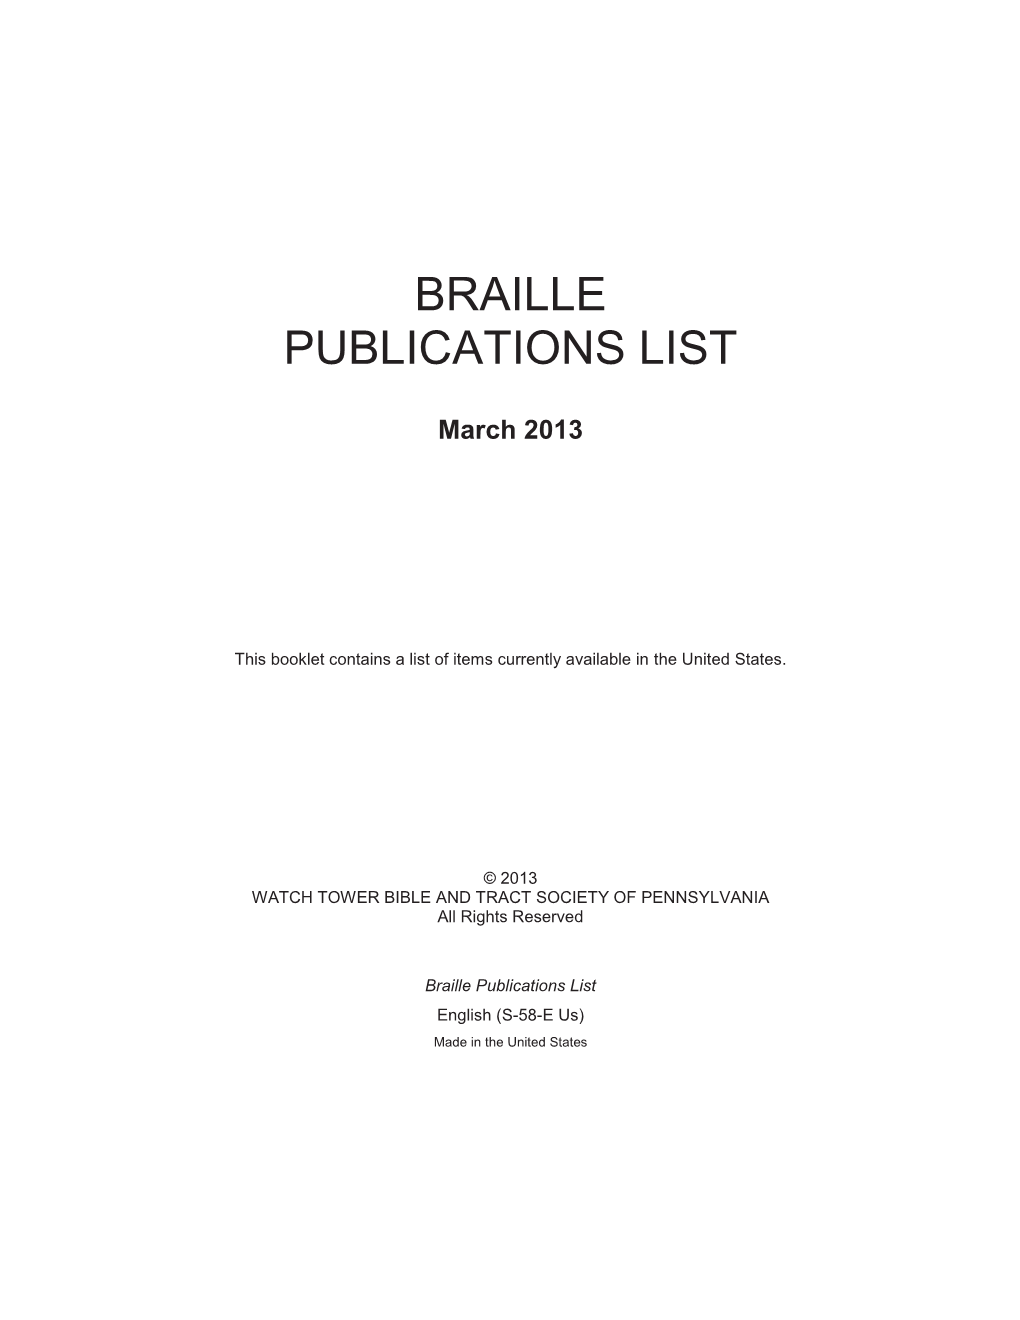 Braille Publications List